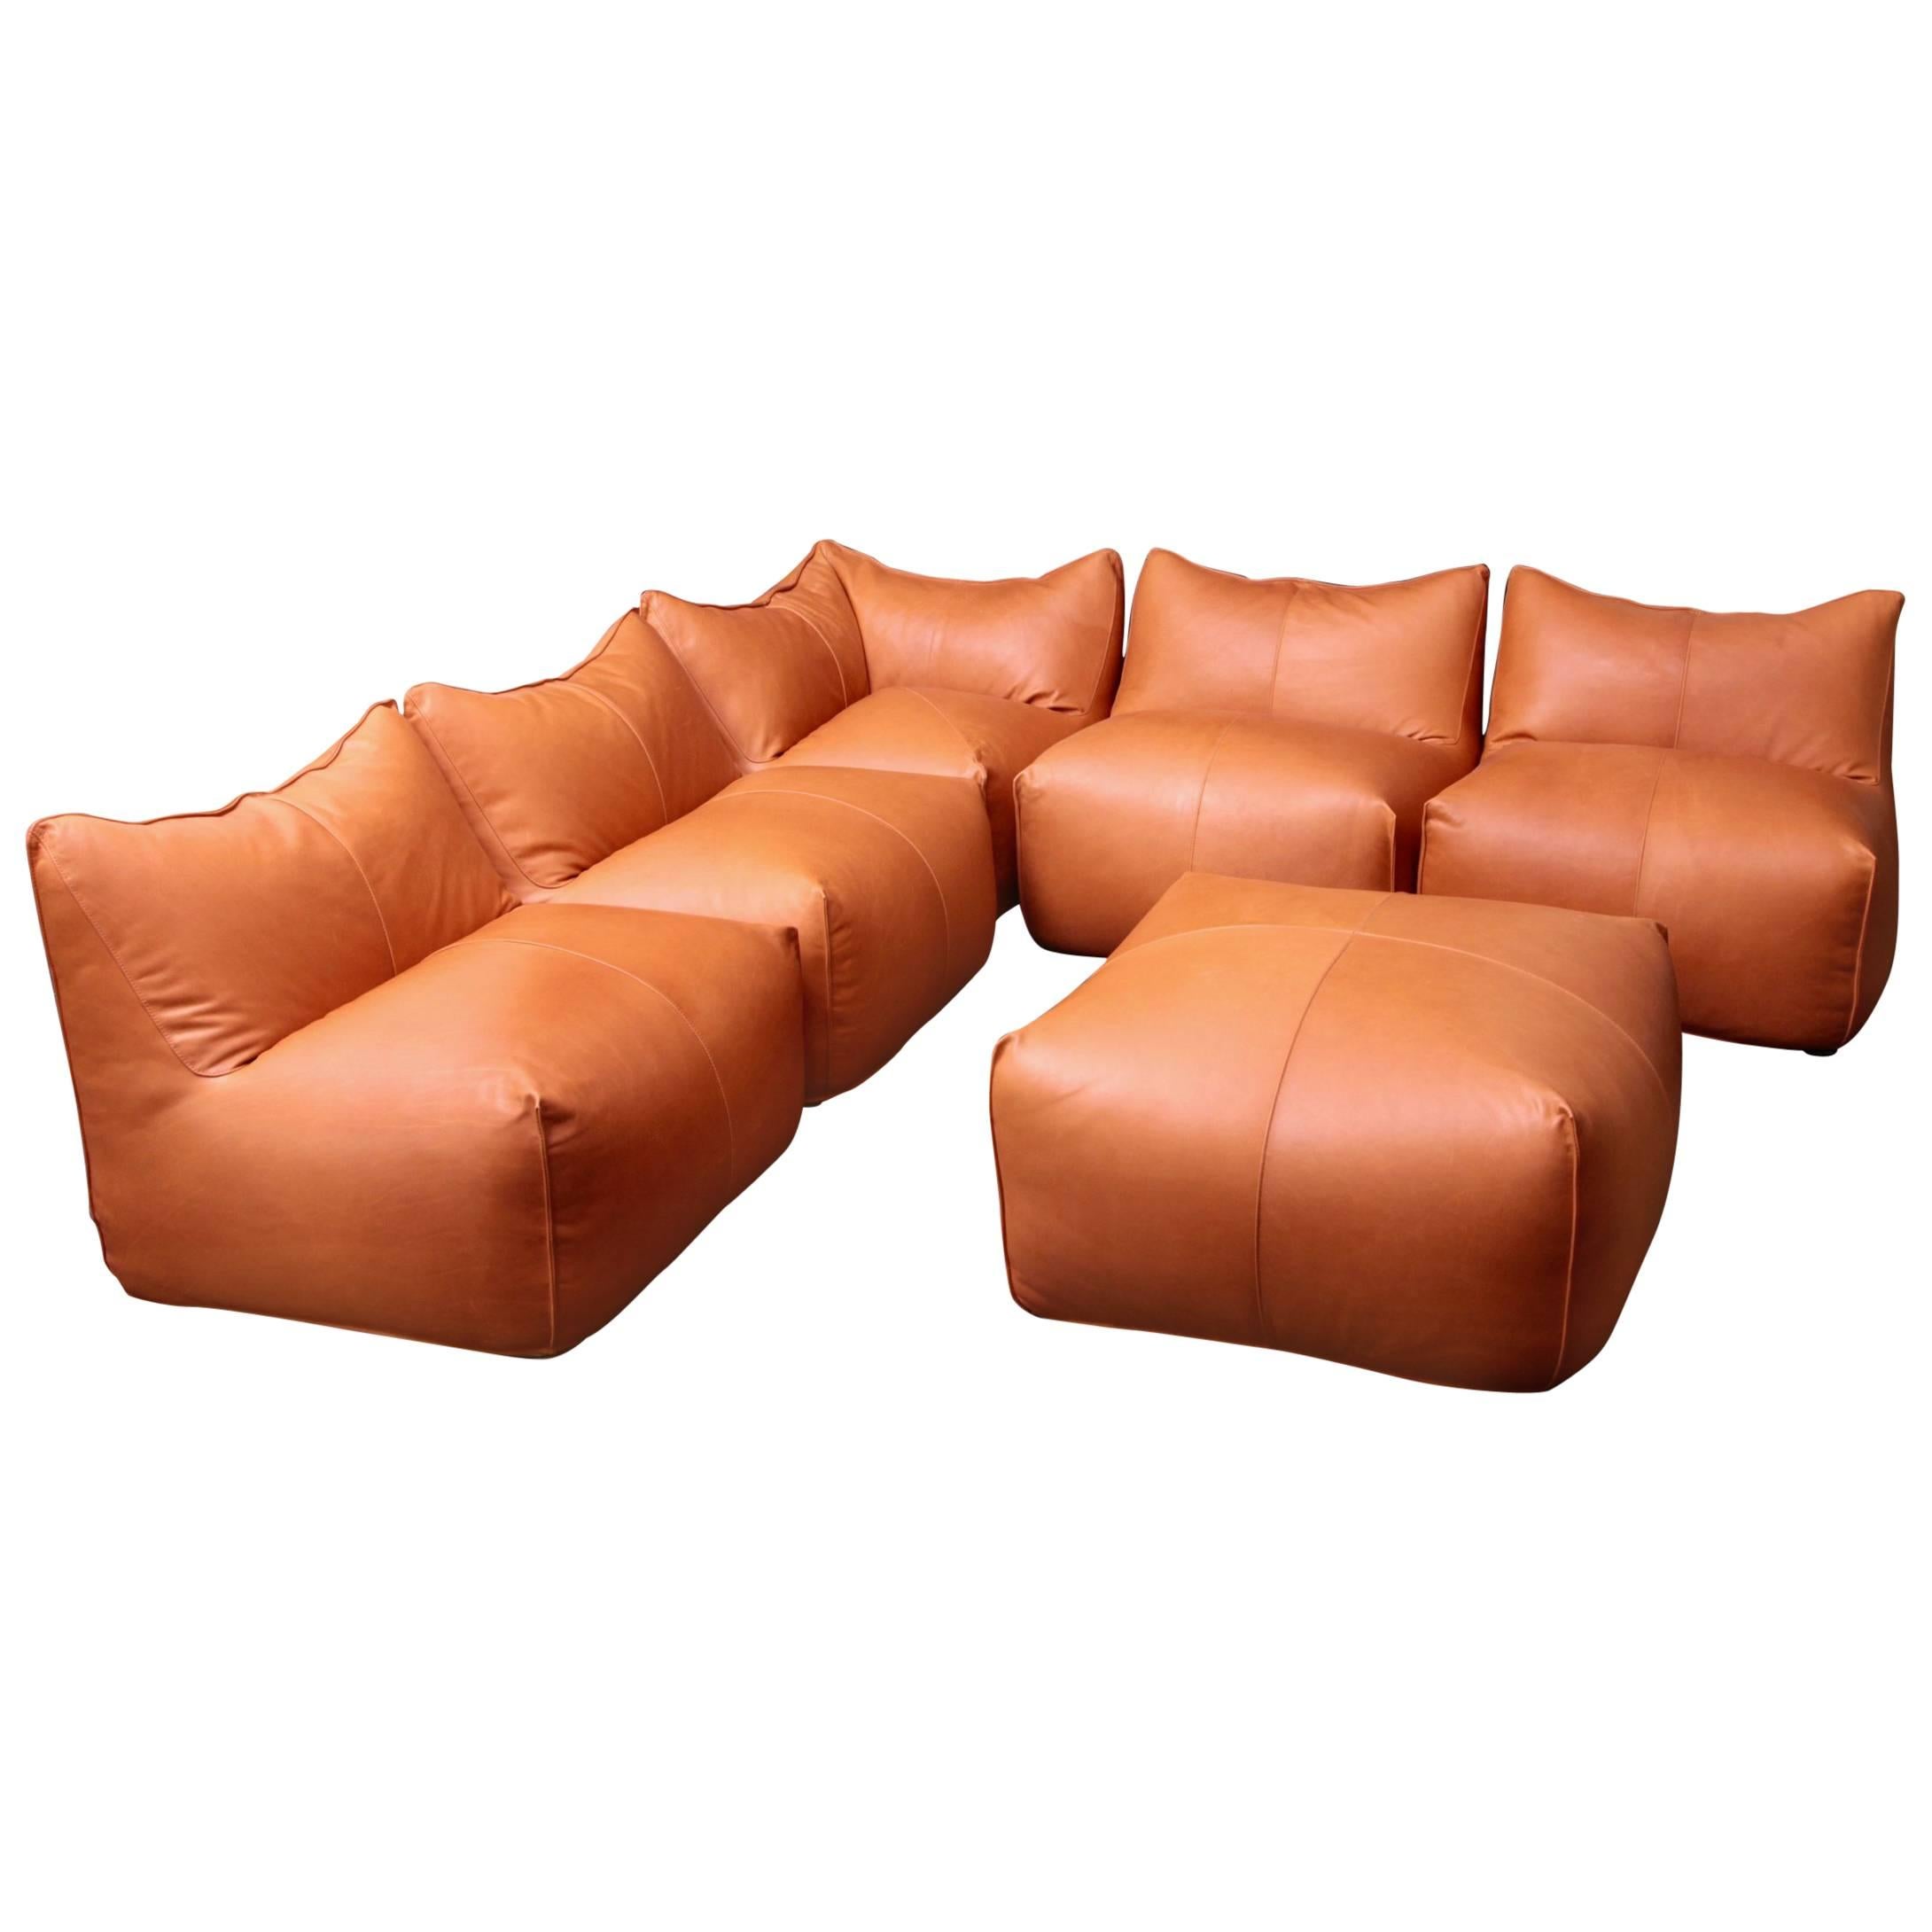 Six Pieces of Sectional Bambole Sofa, Mario Bellini for B&B Italia Tan Leather